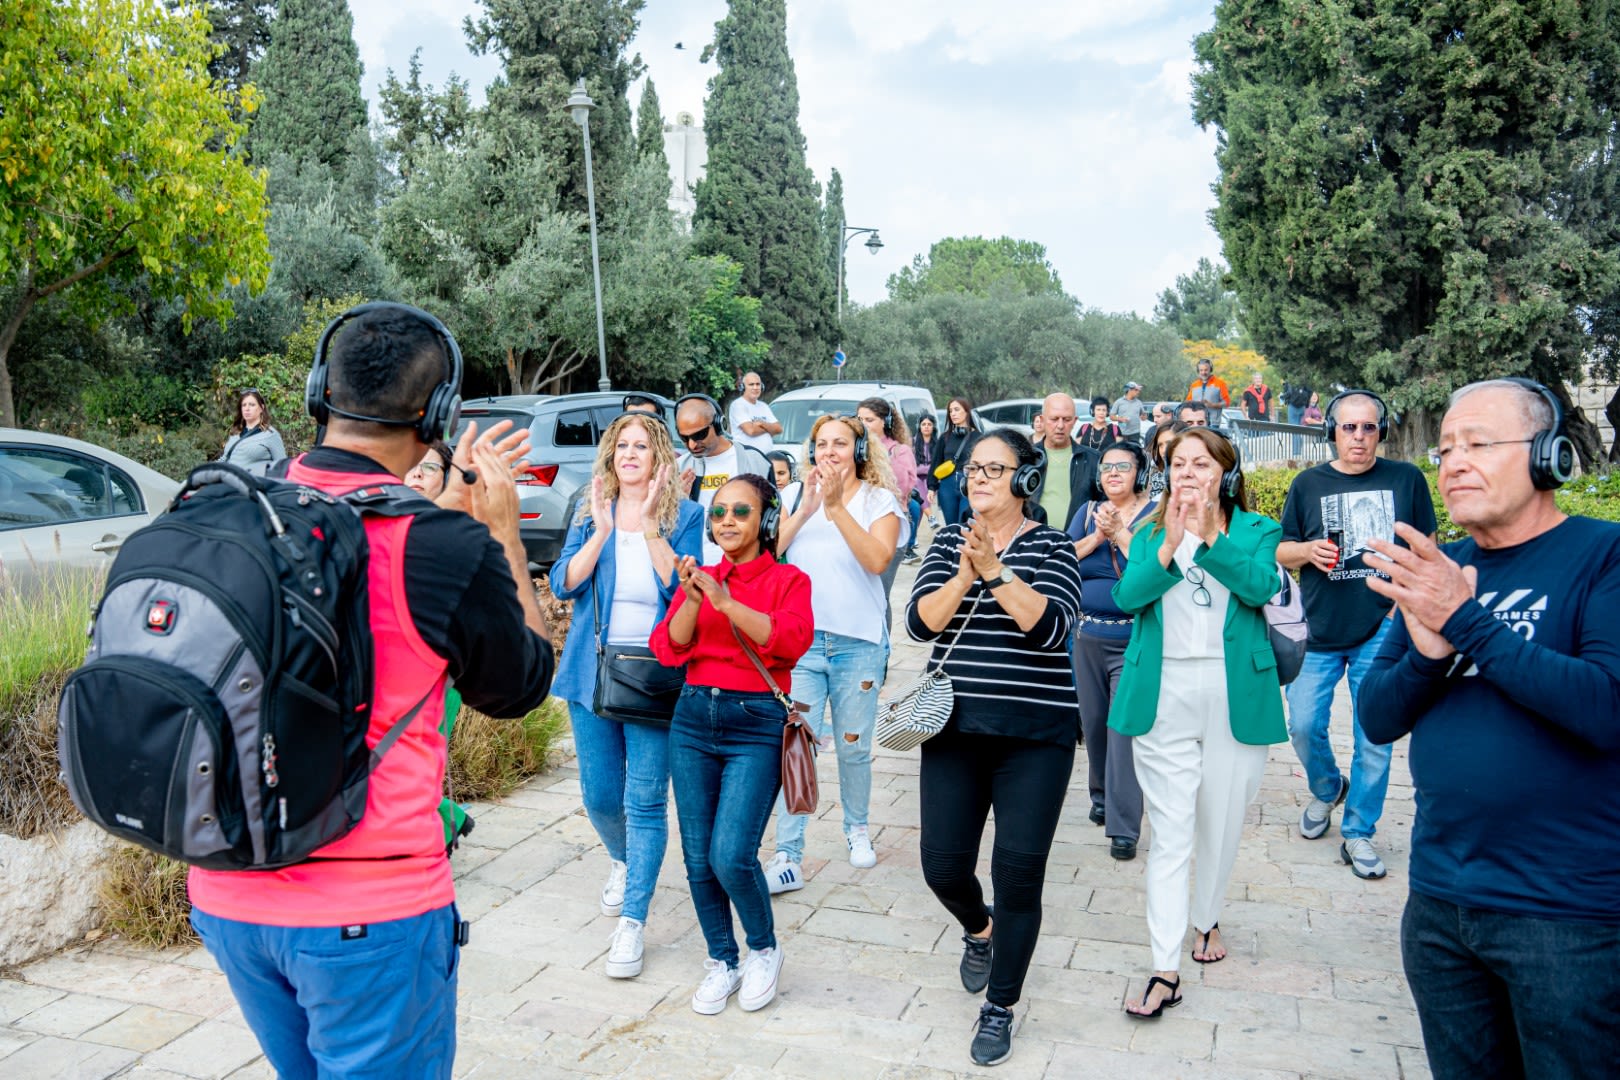 יאללה דיסקו ירושלים: סיור אזניות בתנועה בעיר הקדושה